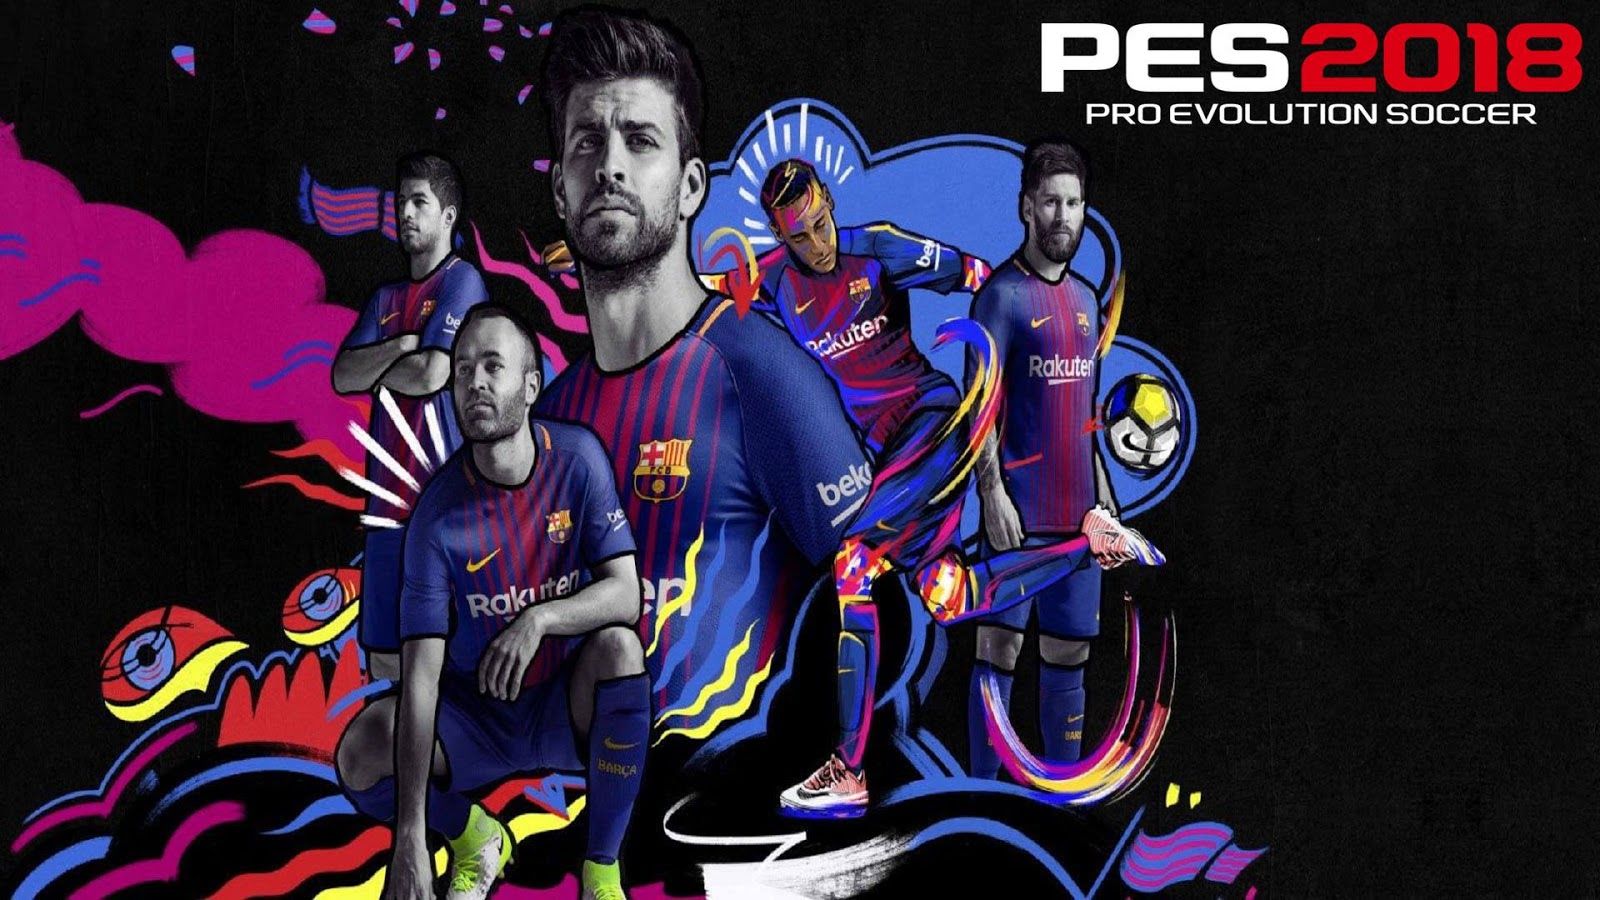 Pro Evolution Soccer Wallpaper Barcelona Wallpaper 2018